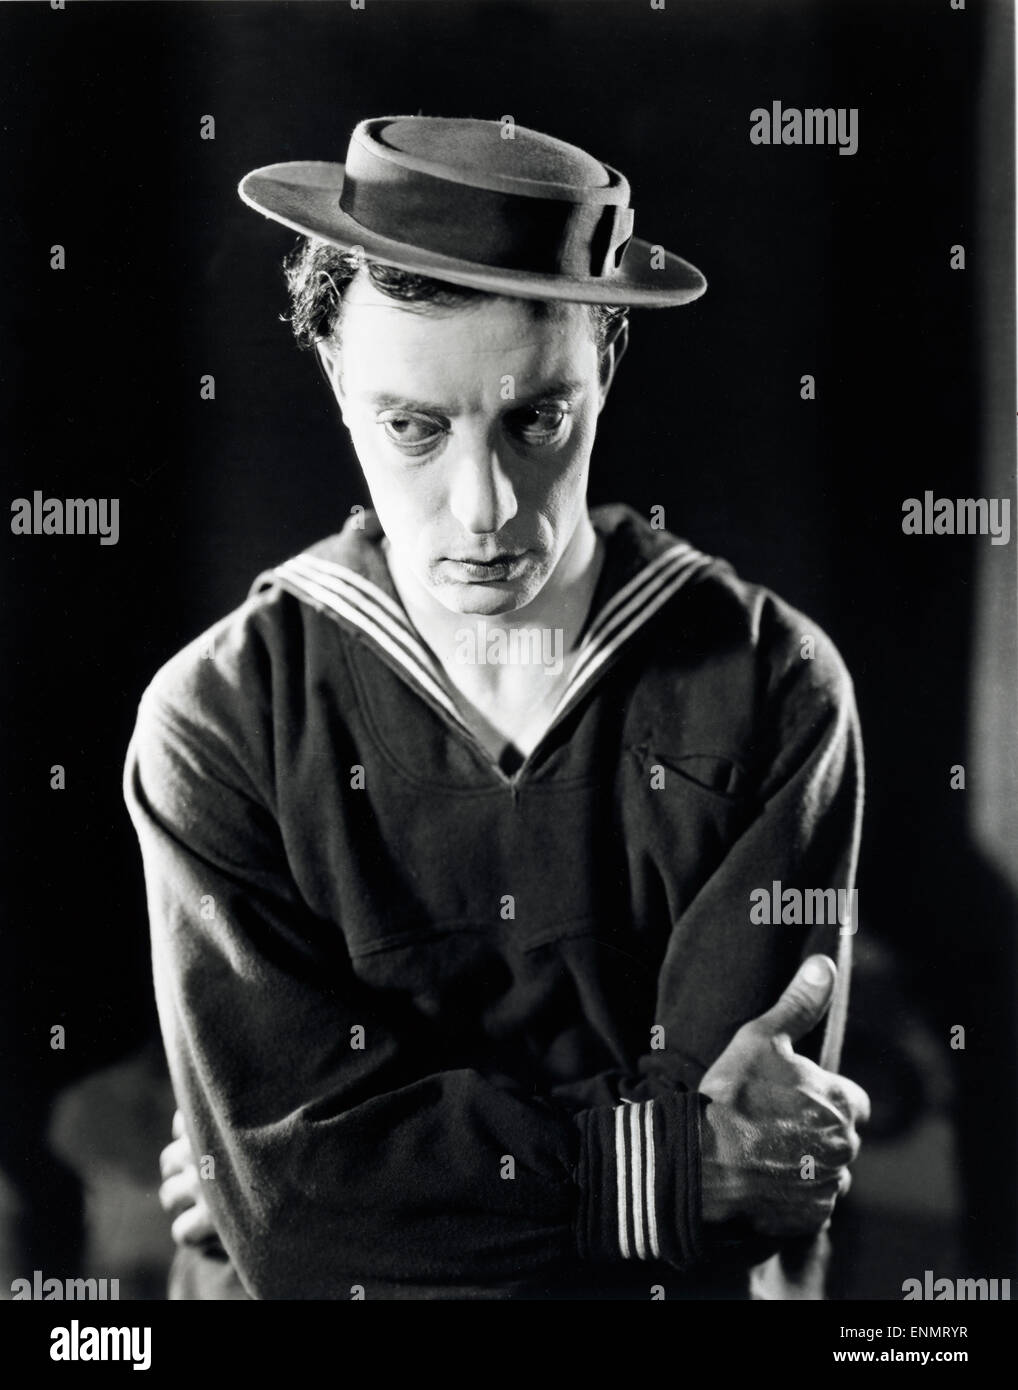 US-Der amerikanische Schauspieler Buster Keaton (1895 - 1966) im Matrosenanzug, ca. Ende der 1920er Jahre. Foto de stock